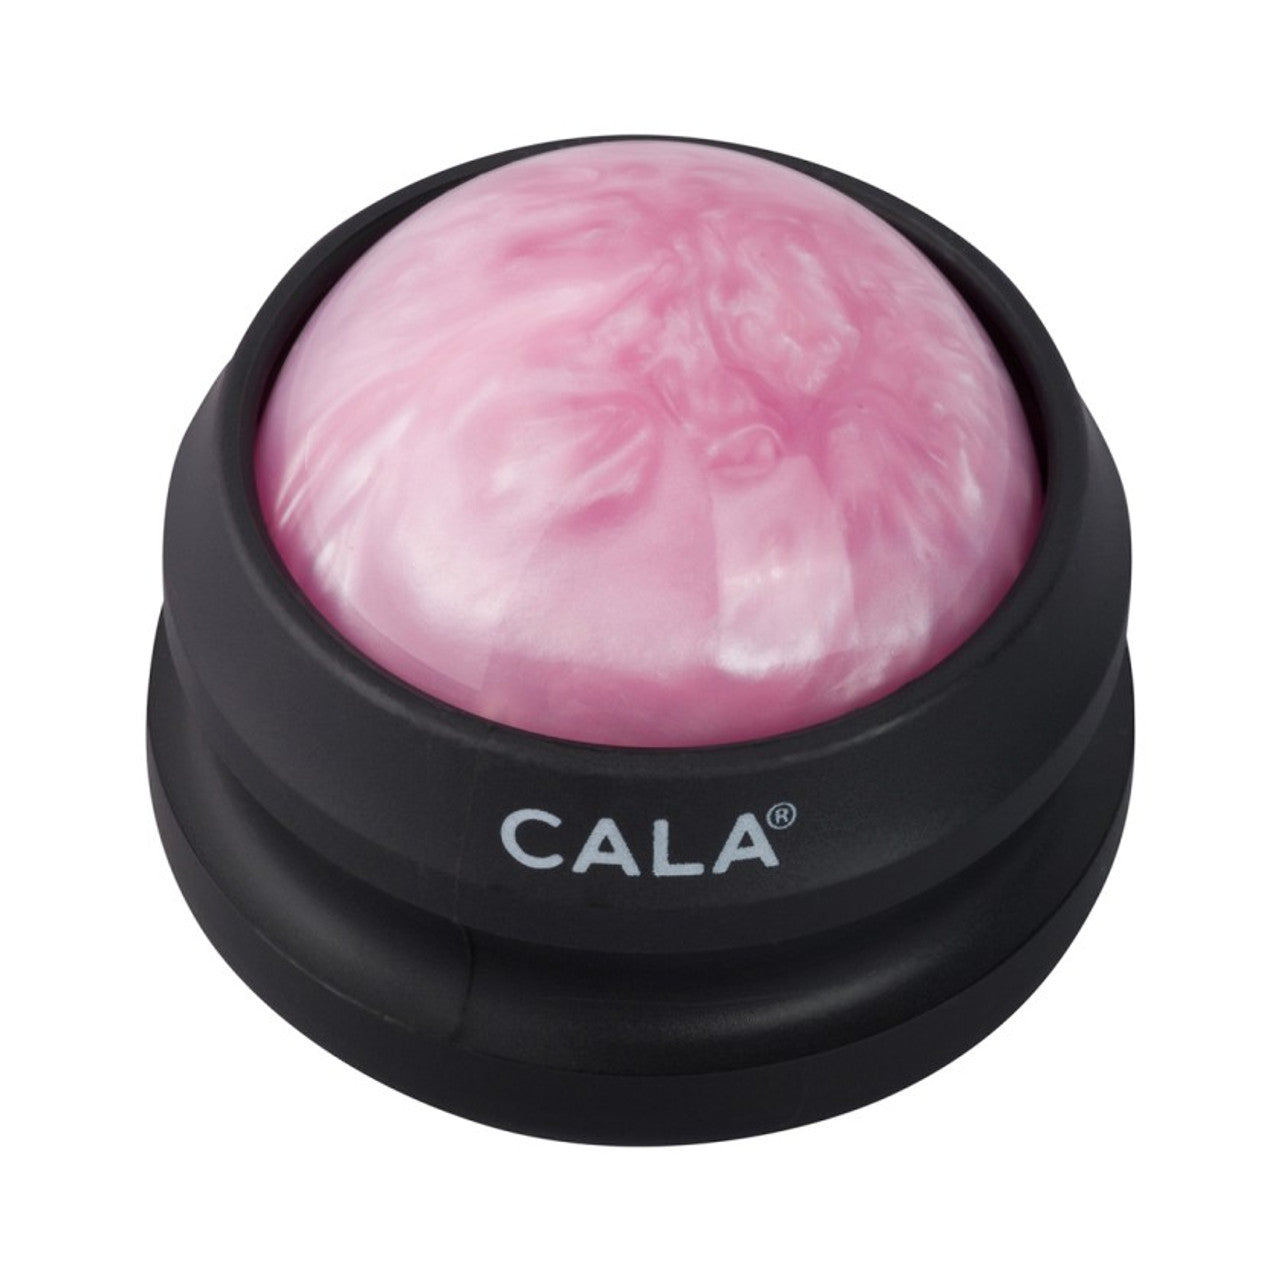 Hand Held Massage Roller Ball - Pink